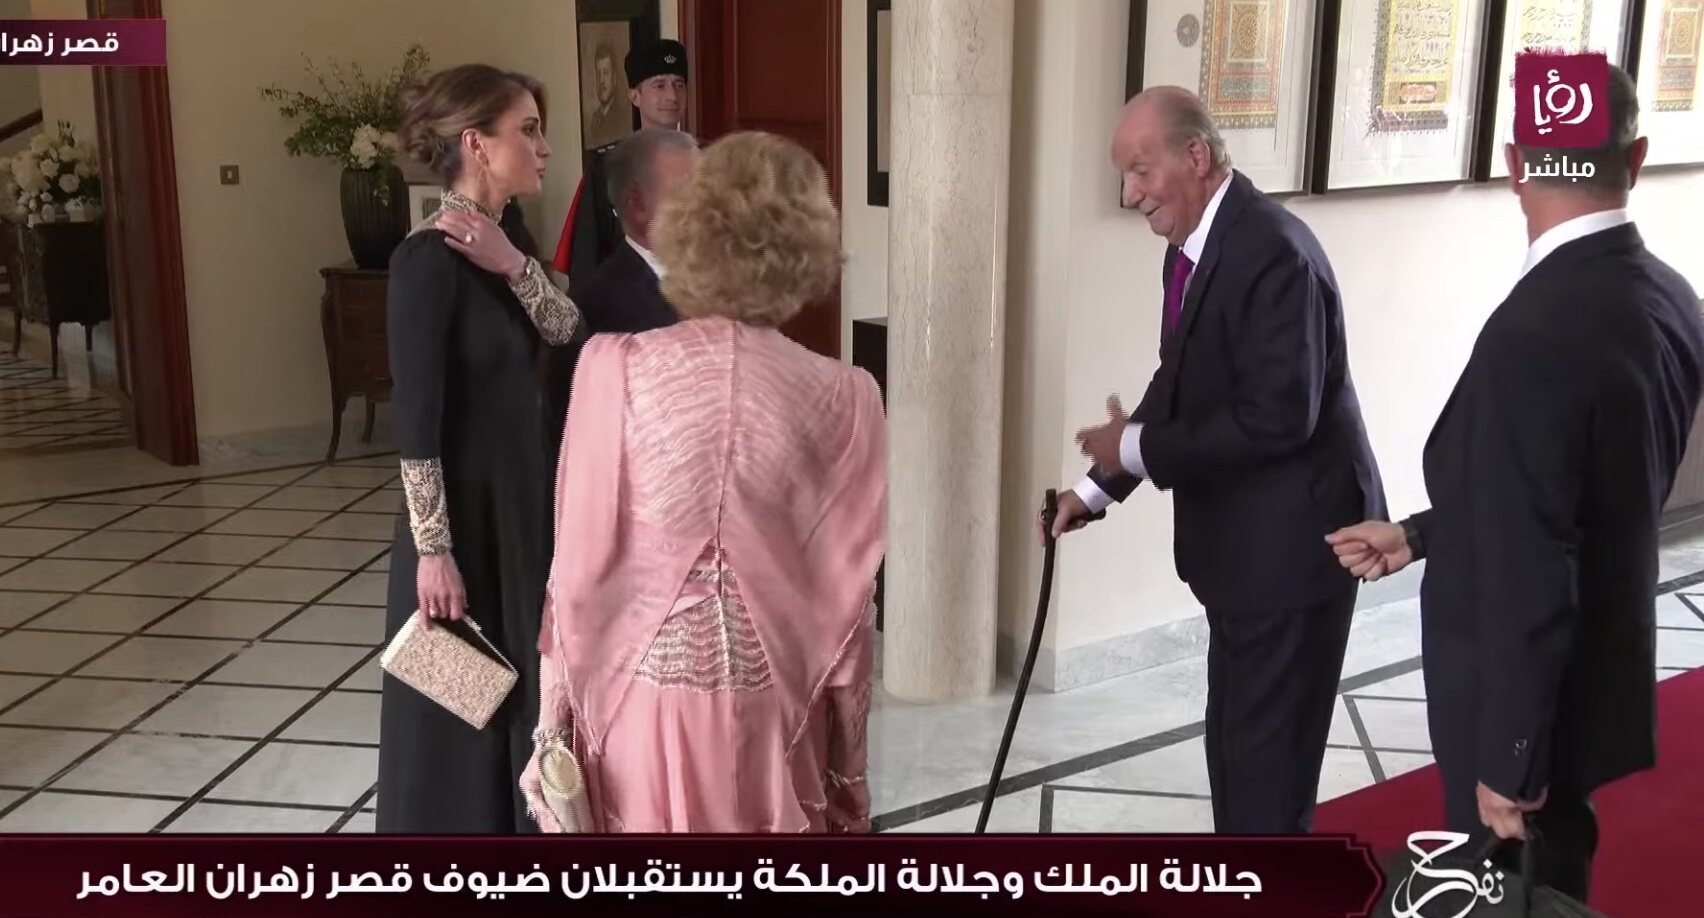 Los Reyes Juan Carlos y Sofía, recibidos por Abdalá y Rania de Jordania